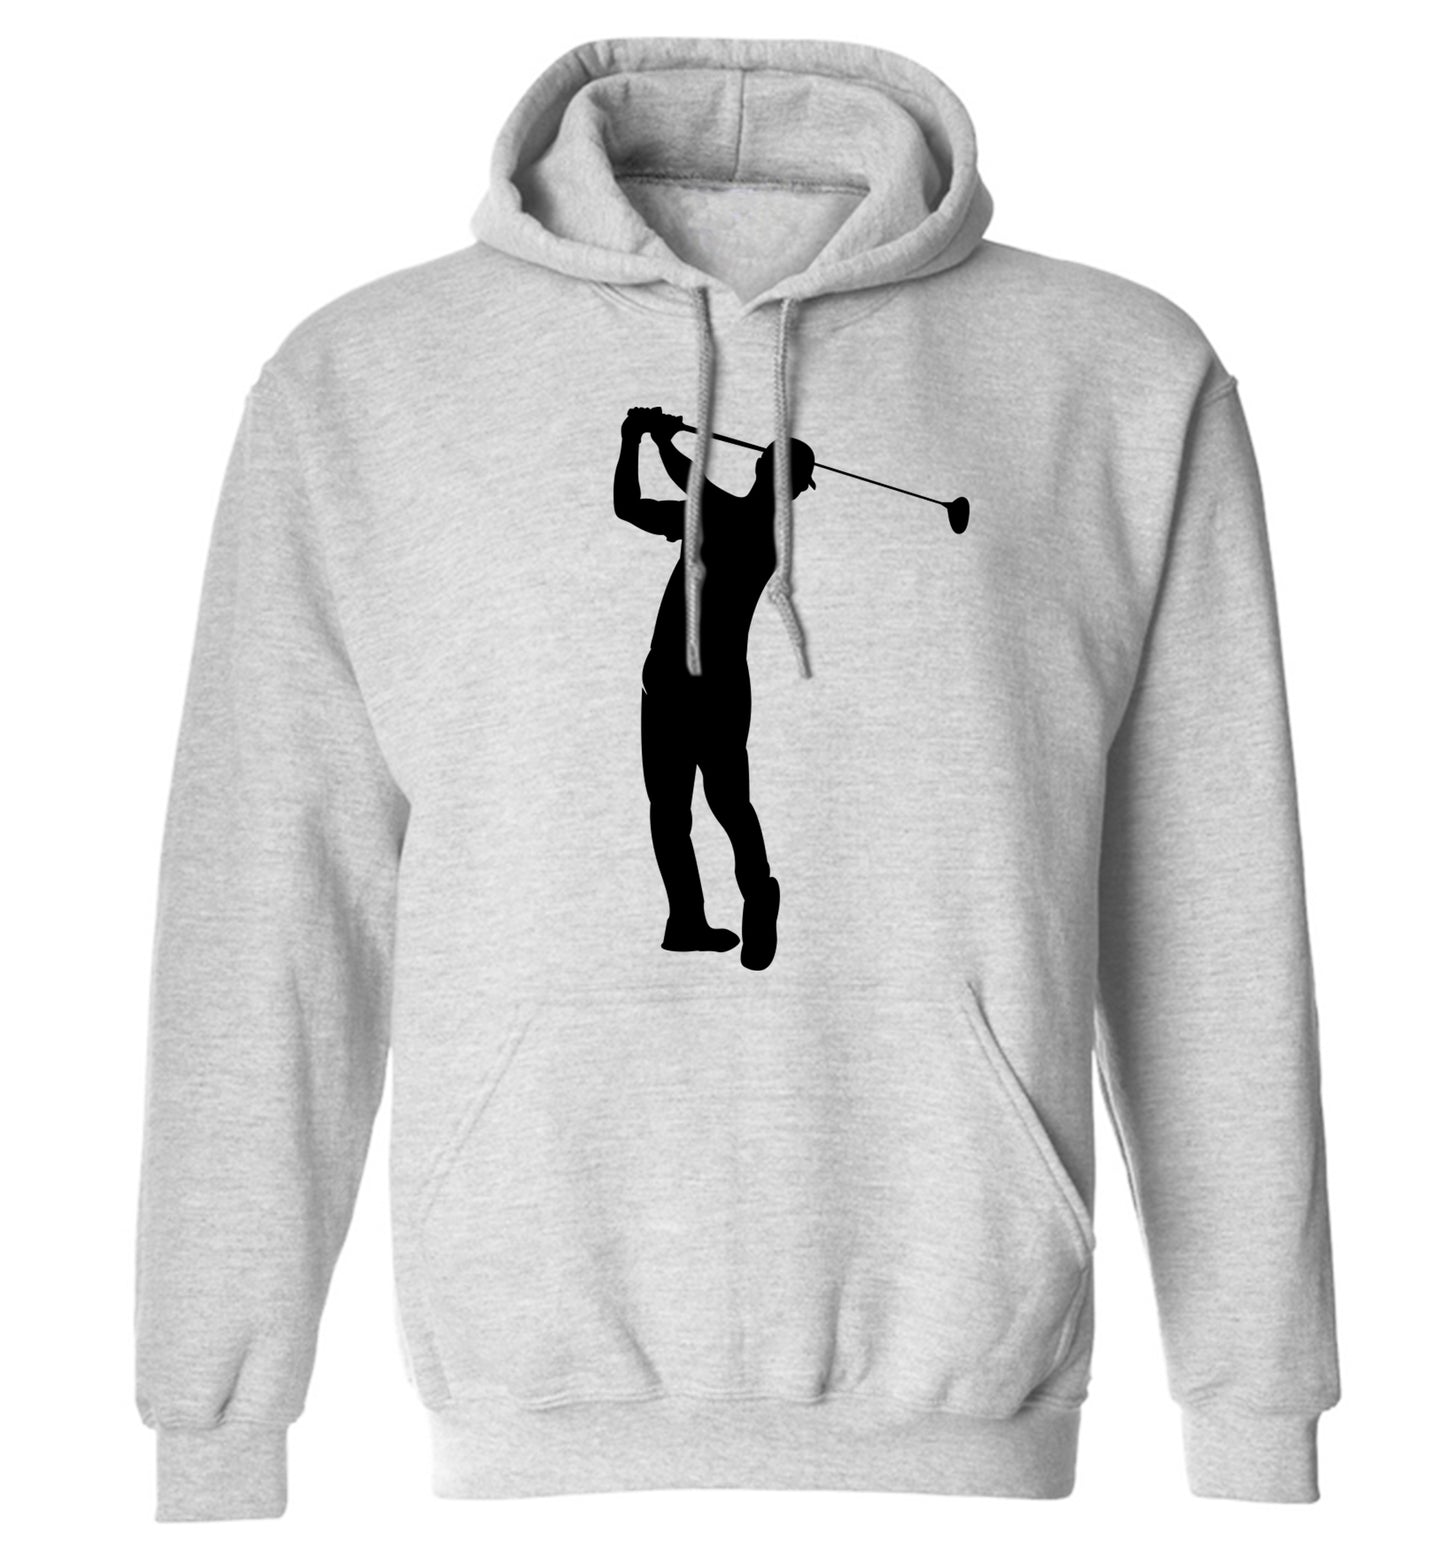 Golfer Illustration adults unisex grey hoodie 2XL